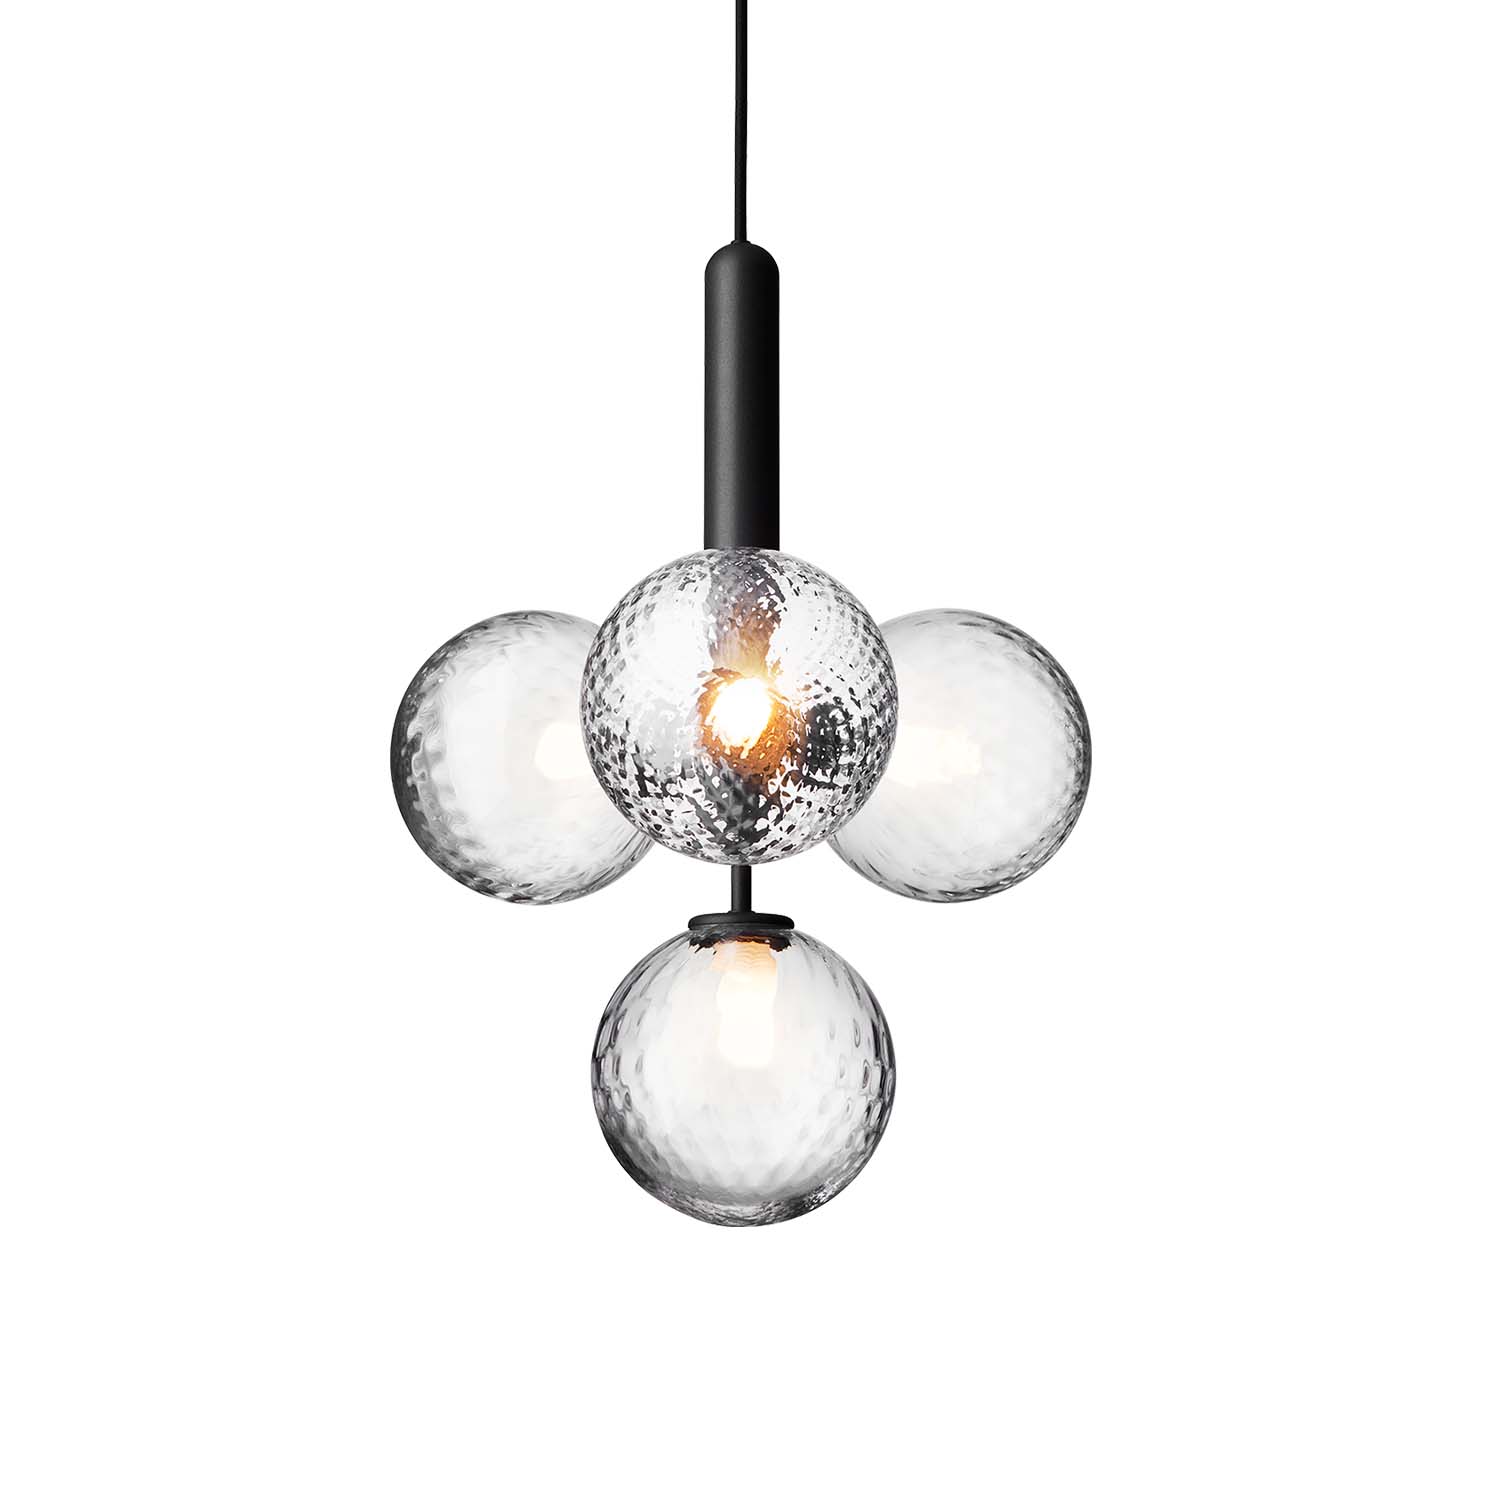 MIIRA 4 Optic - High-end elegant chandelier, dining room, gold or black